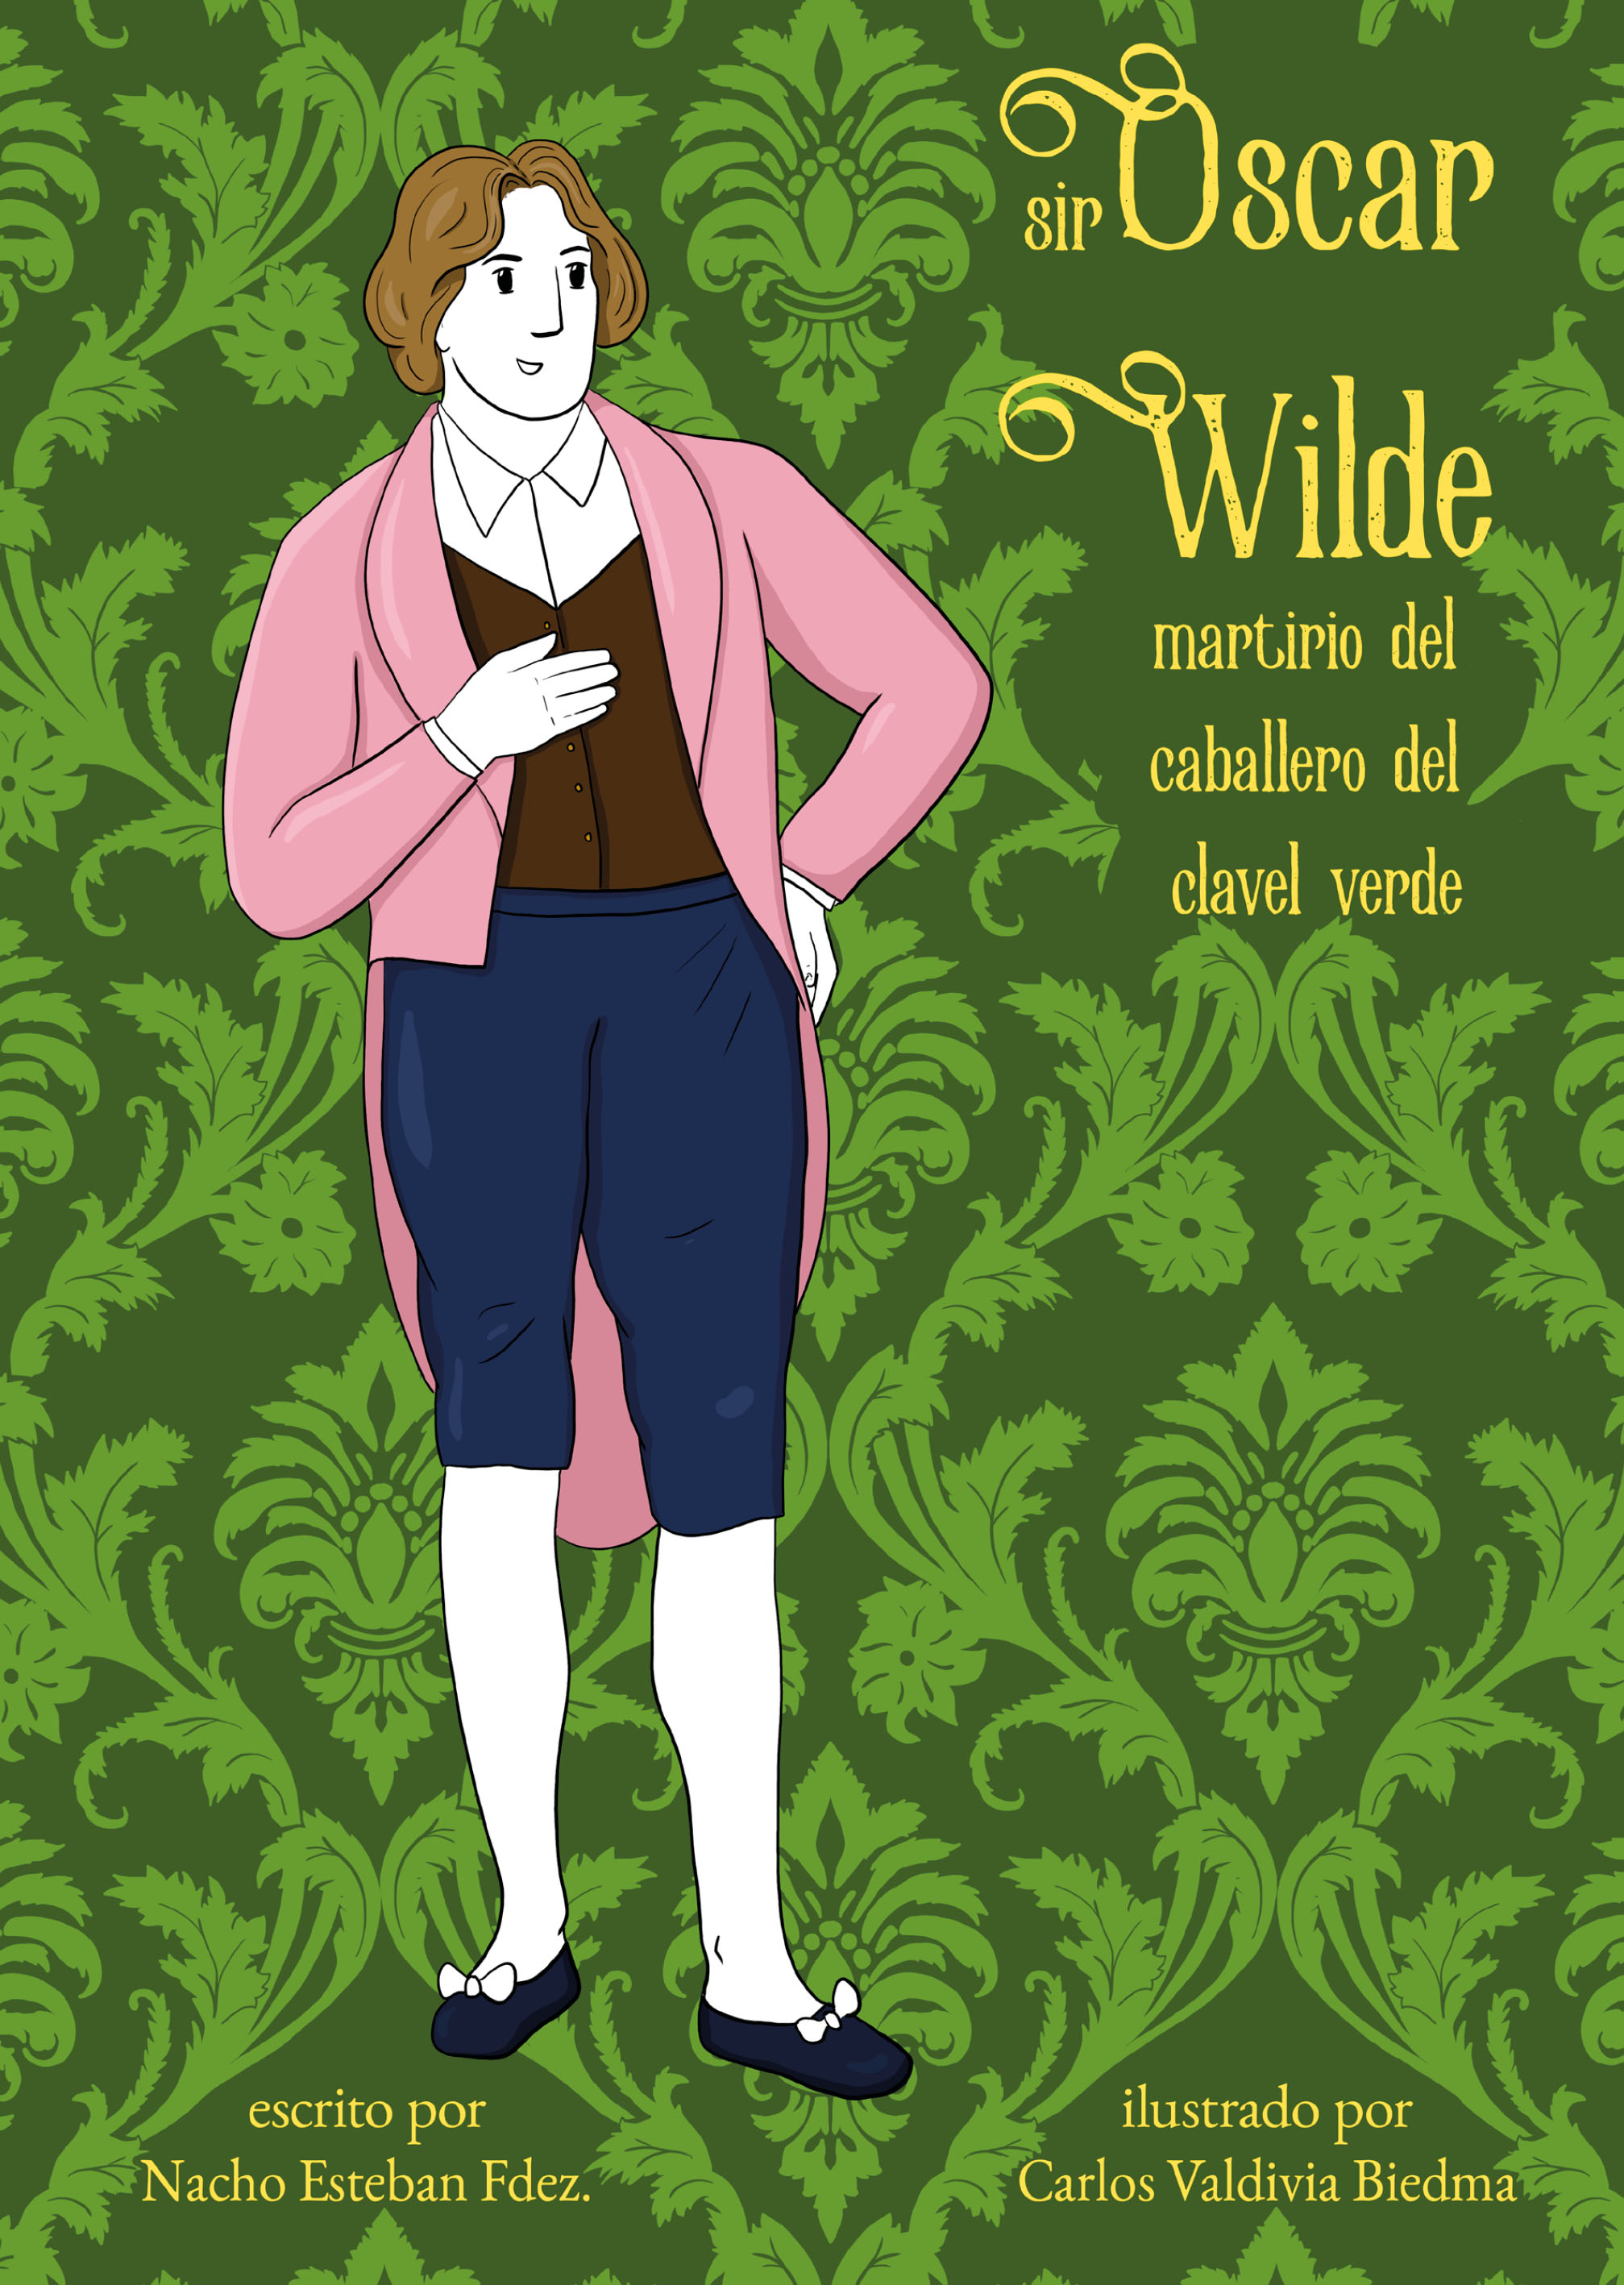 Vengaremos a Oscar Wilde": todos los secretos del genio gay condenado por "sodomita" y rebelde